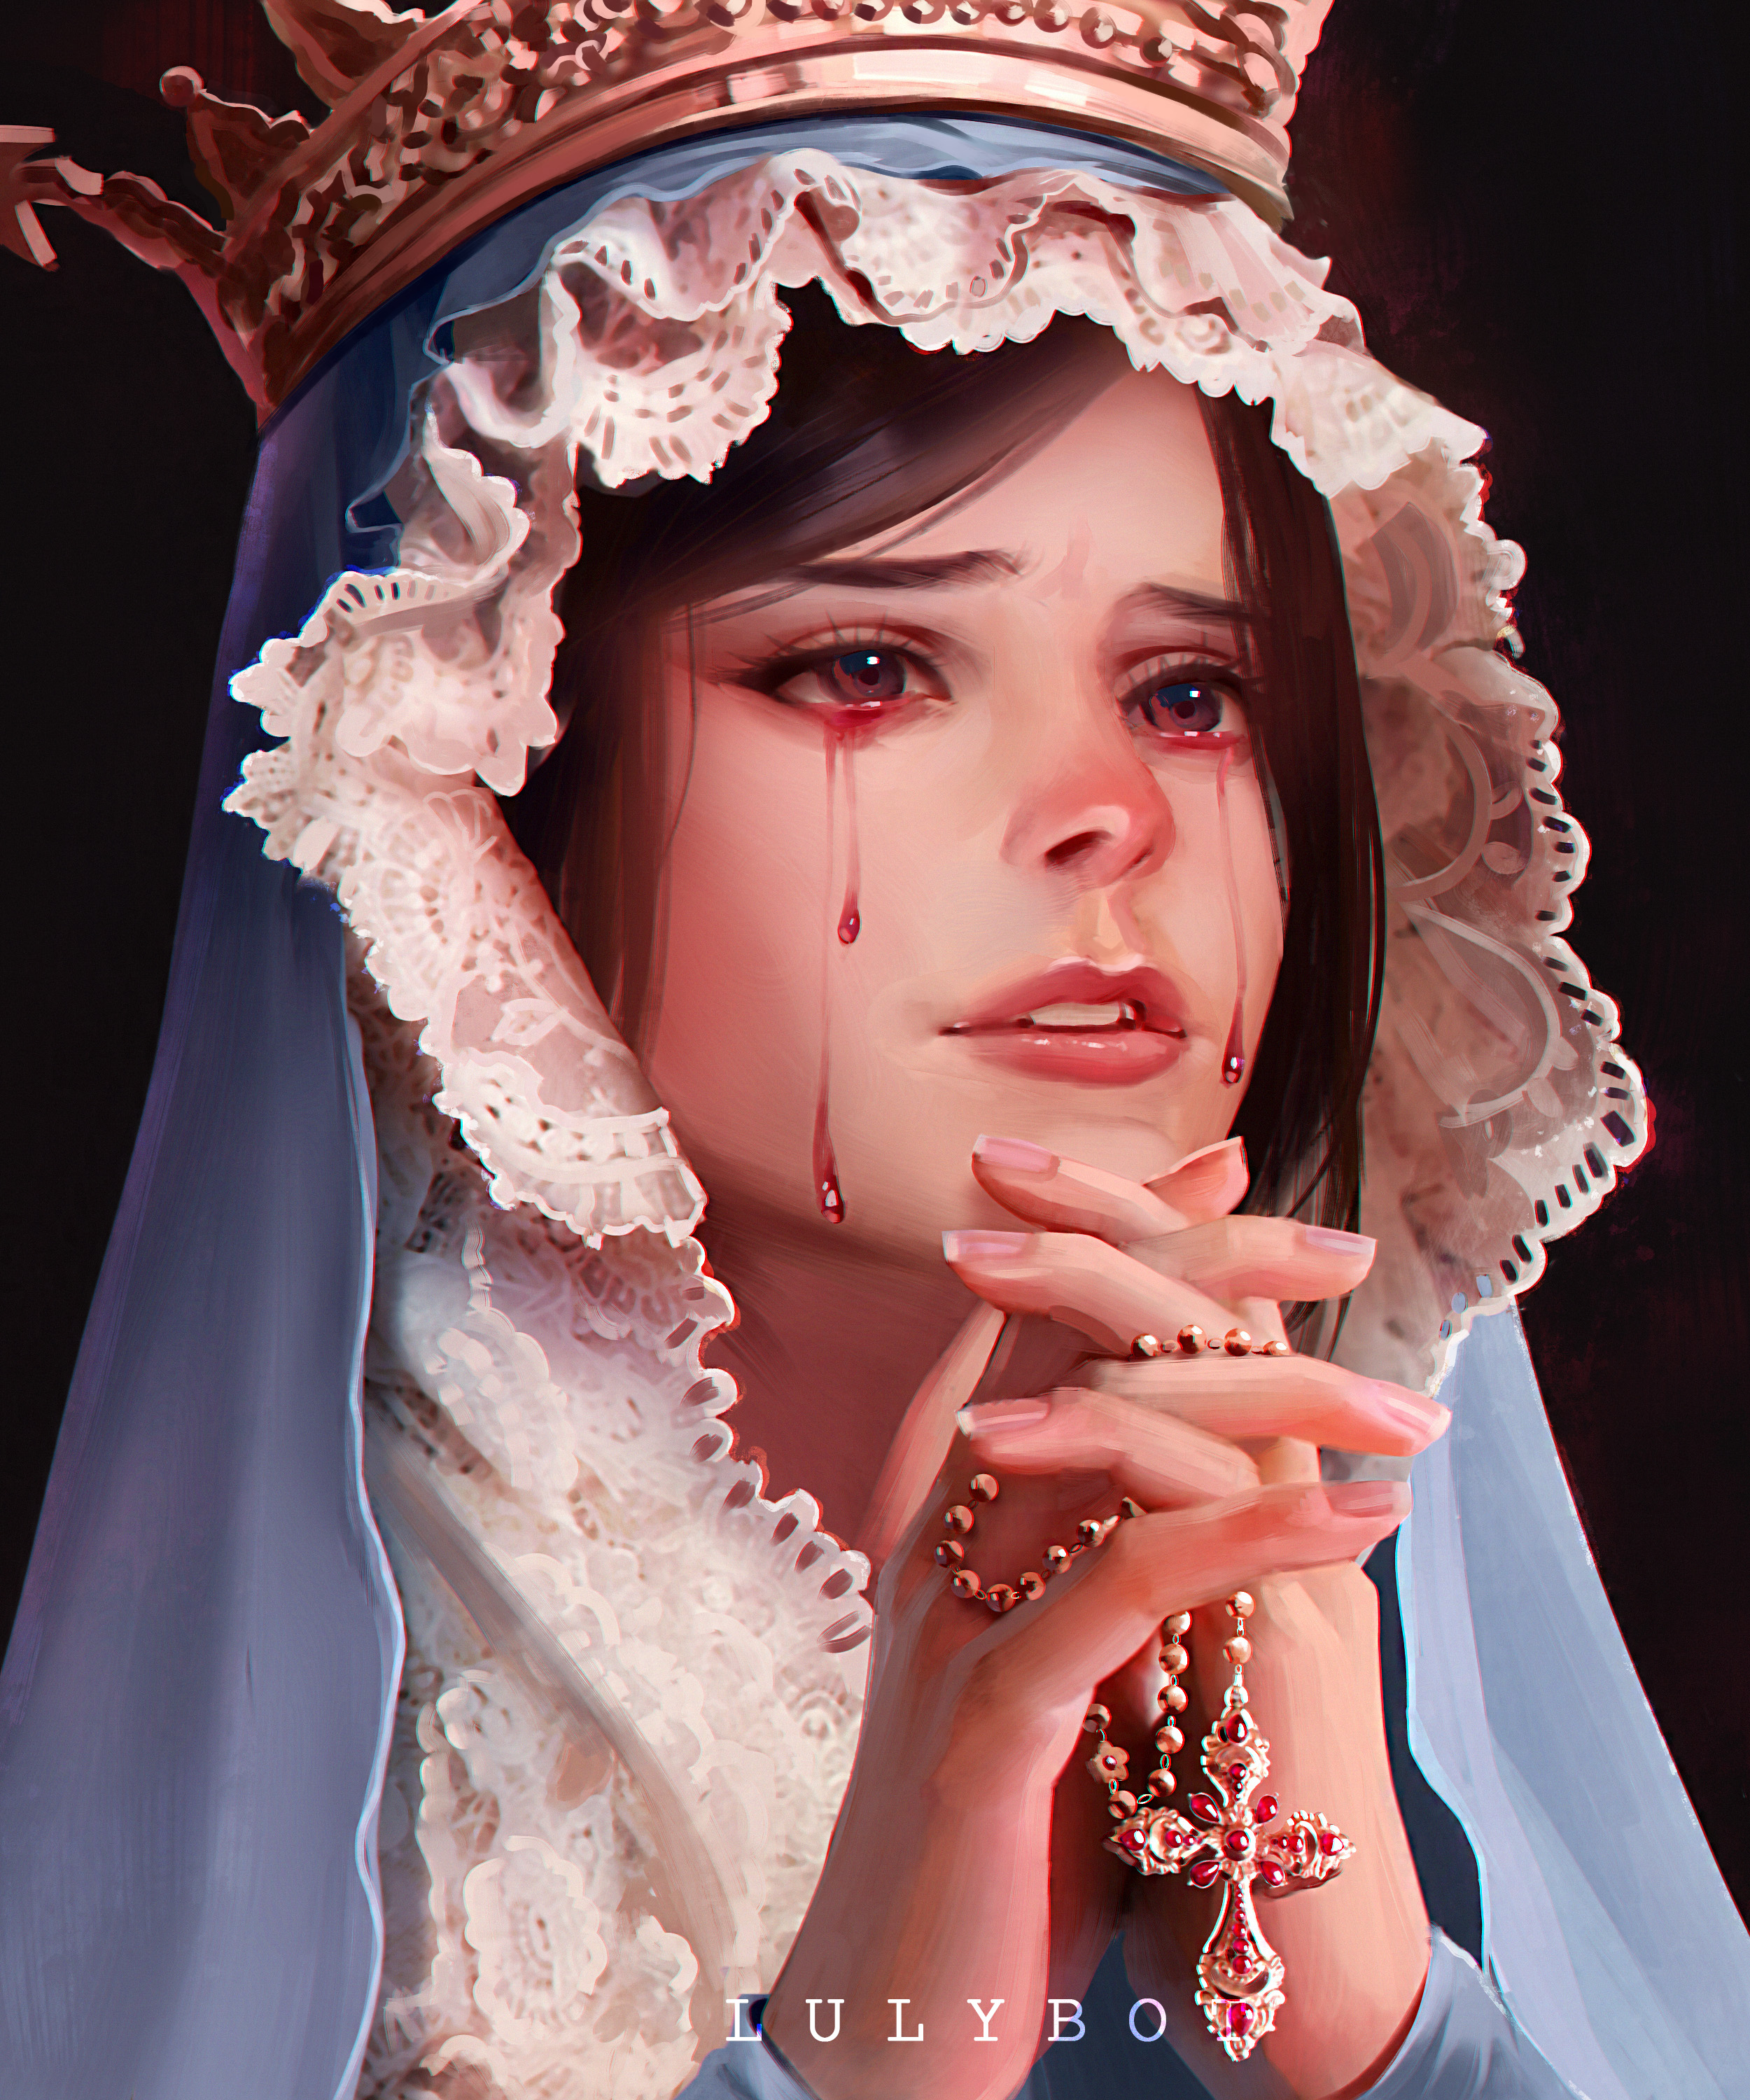 Фото Девушка в короне с крестом в руках плачет кровавыми слезами, by Lulybot